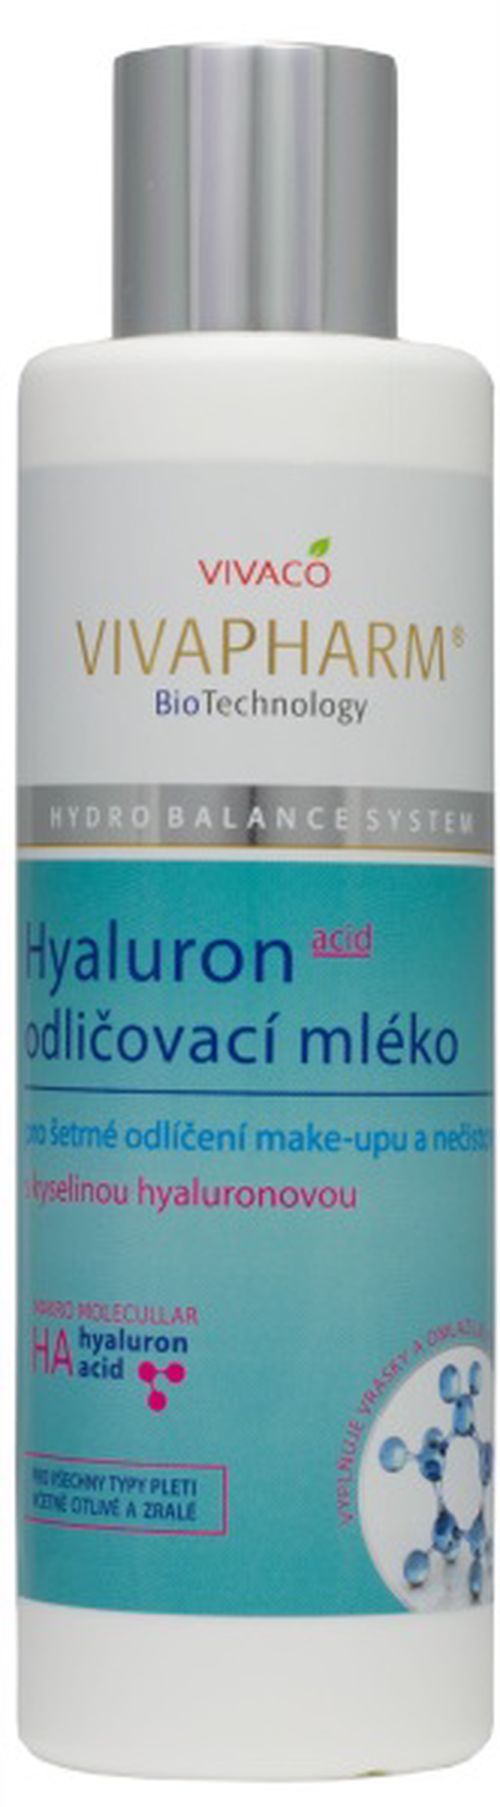 Odličovací mléko s kyselinou hyaluronovou VIVAPHARM